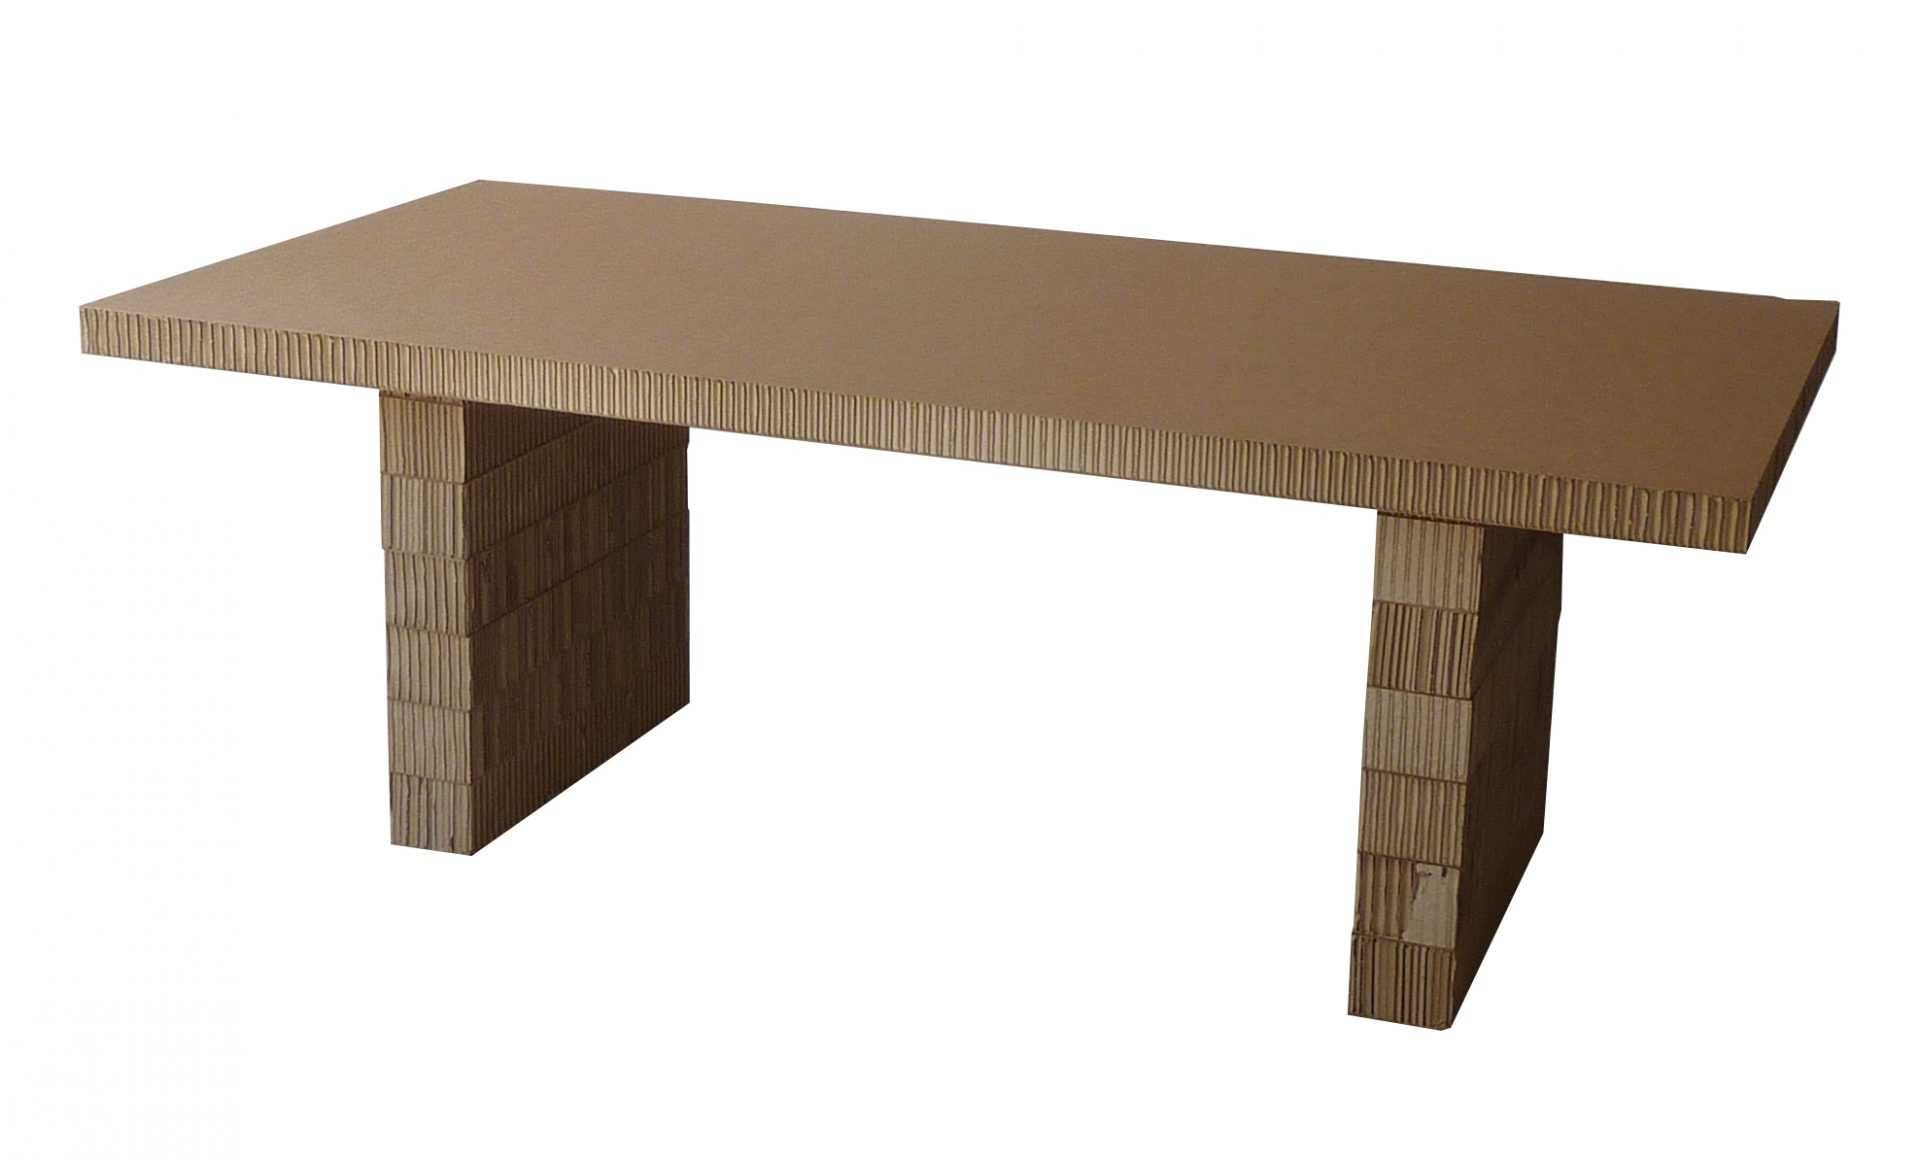 специально разработанные картонные столы